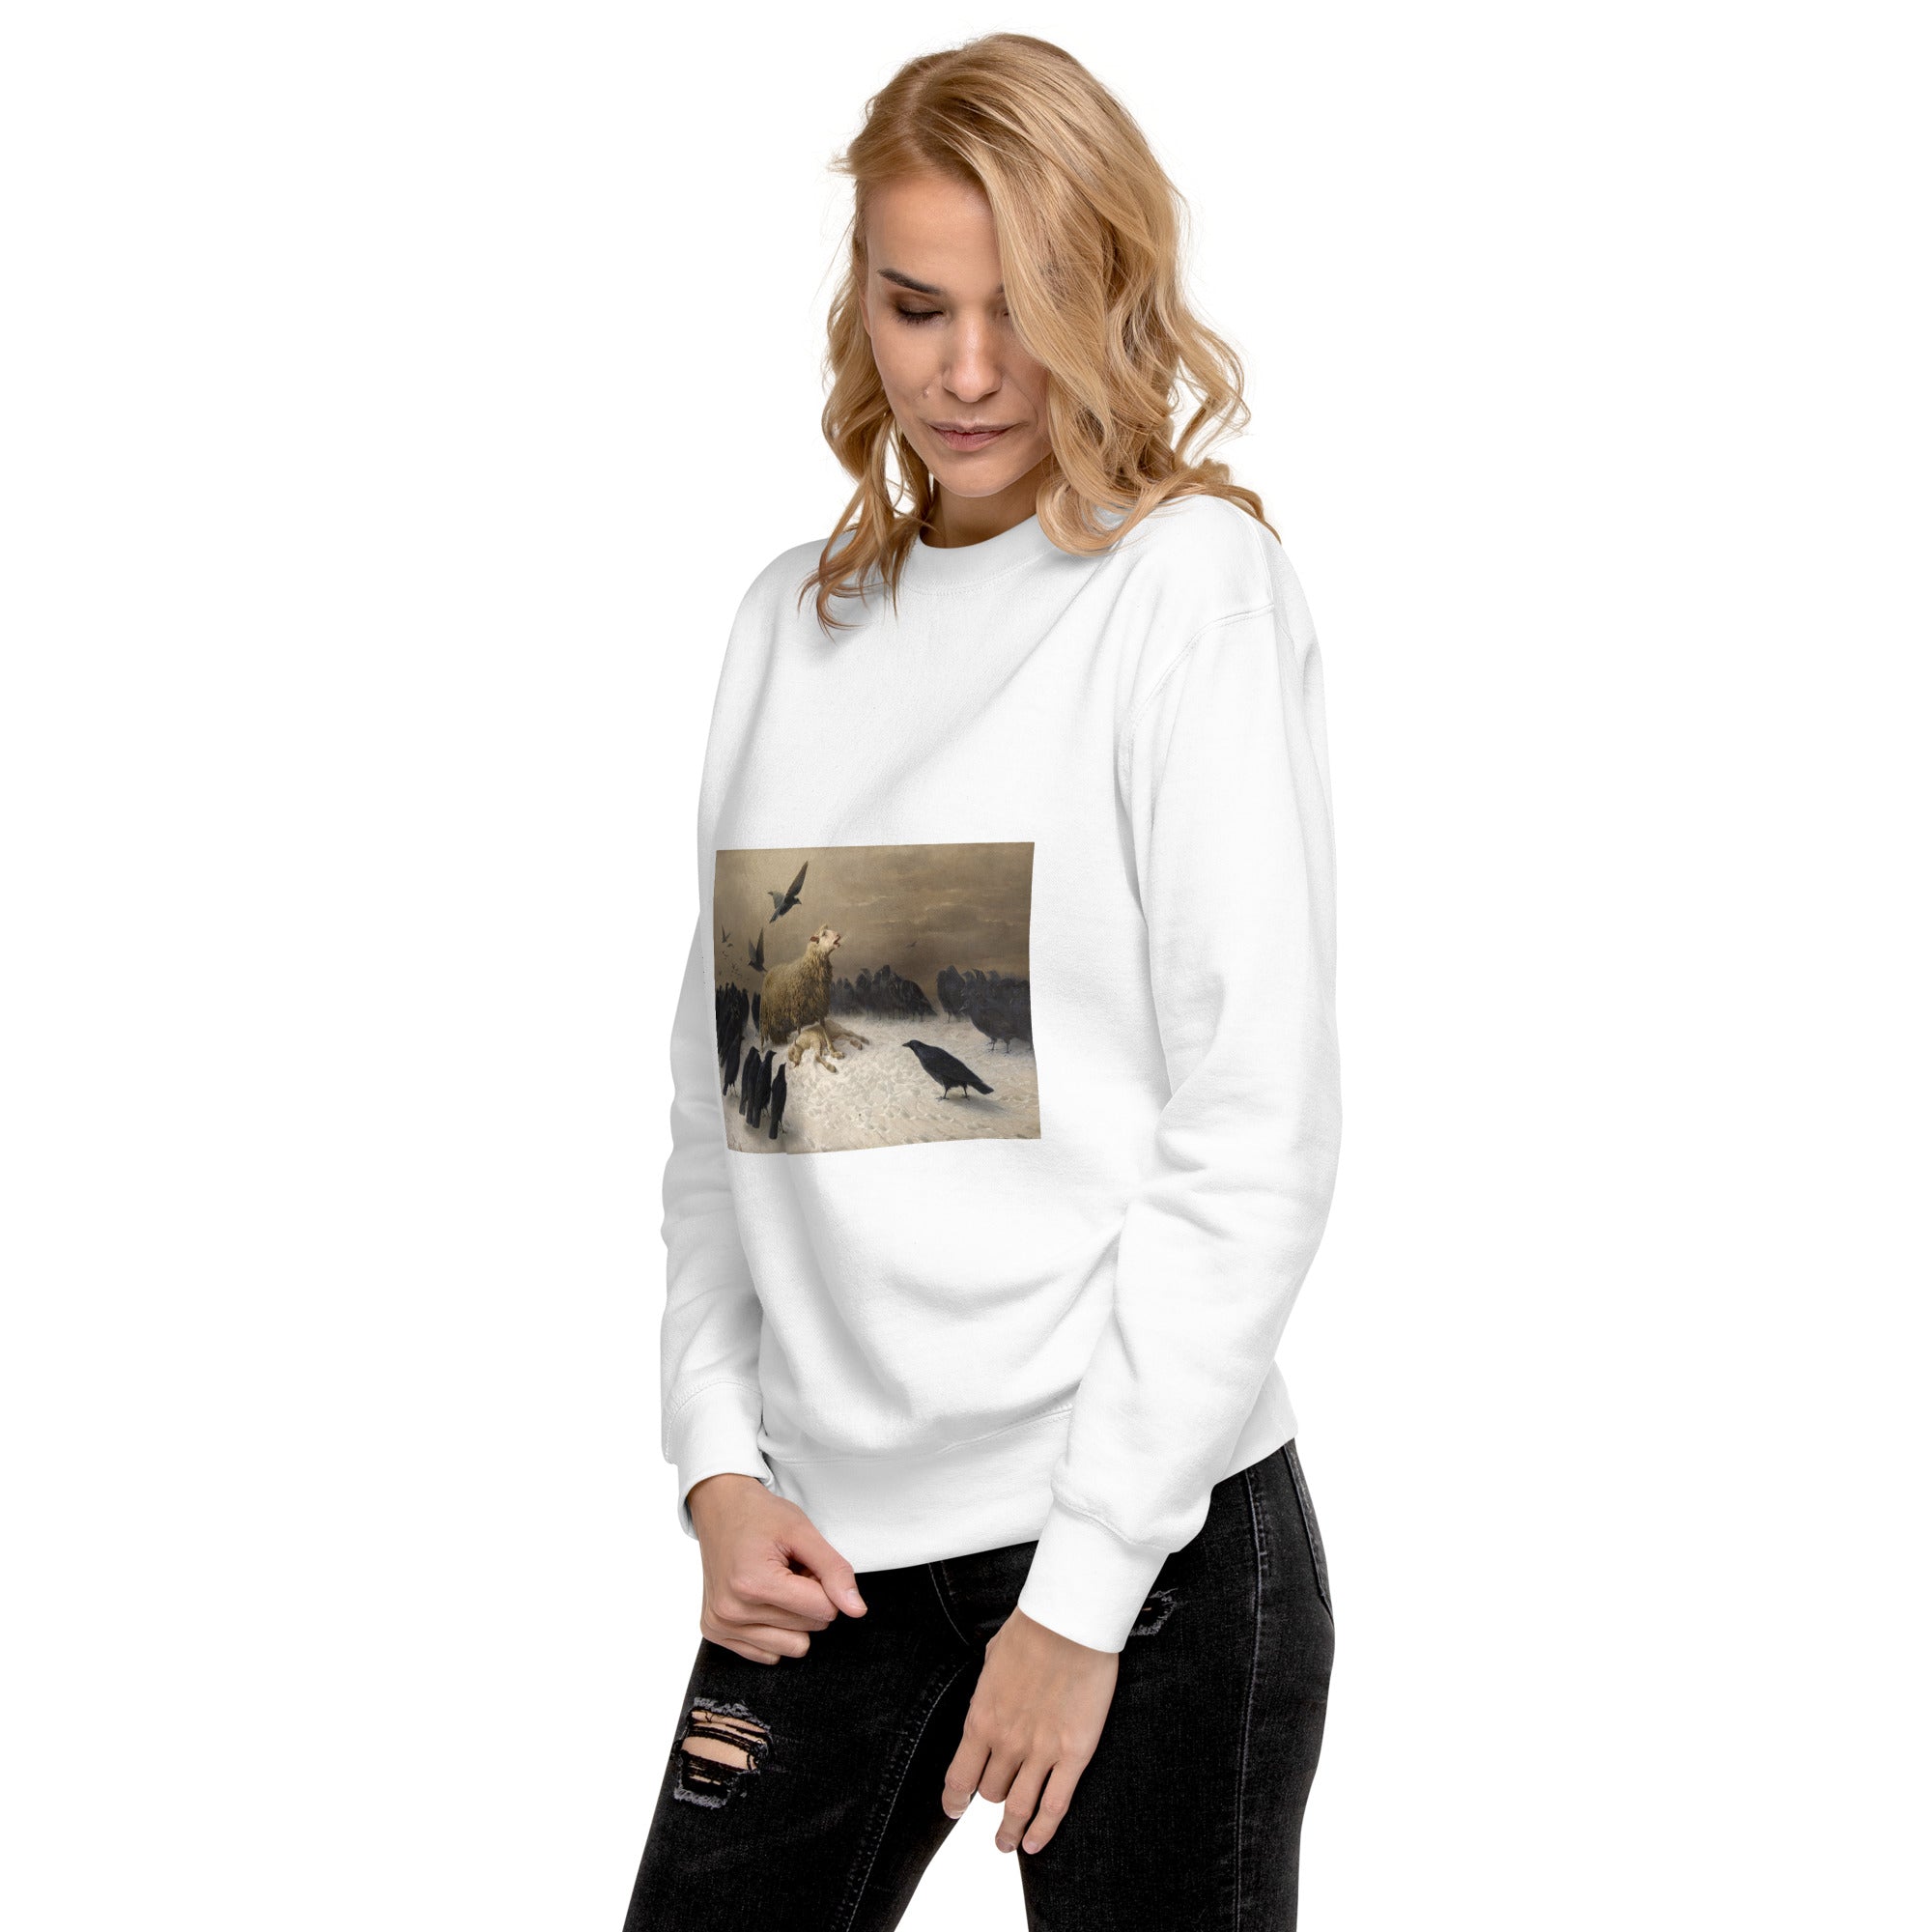 August Friedrich Schenck 'Anguish' Famous Painting Sweatshirt | Unisex Premium Sweatshirt